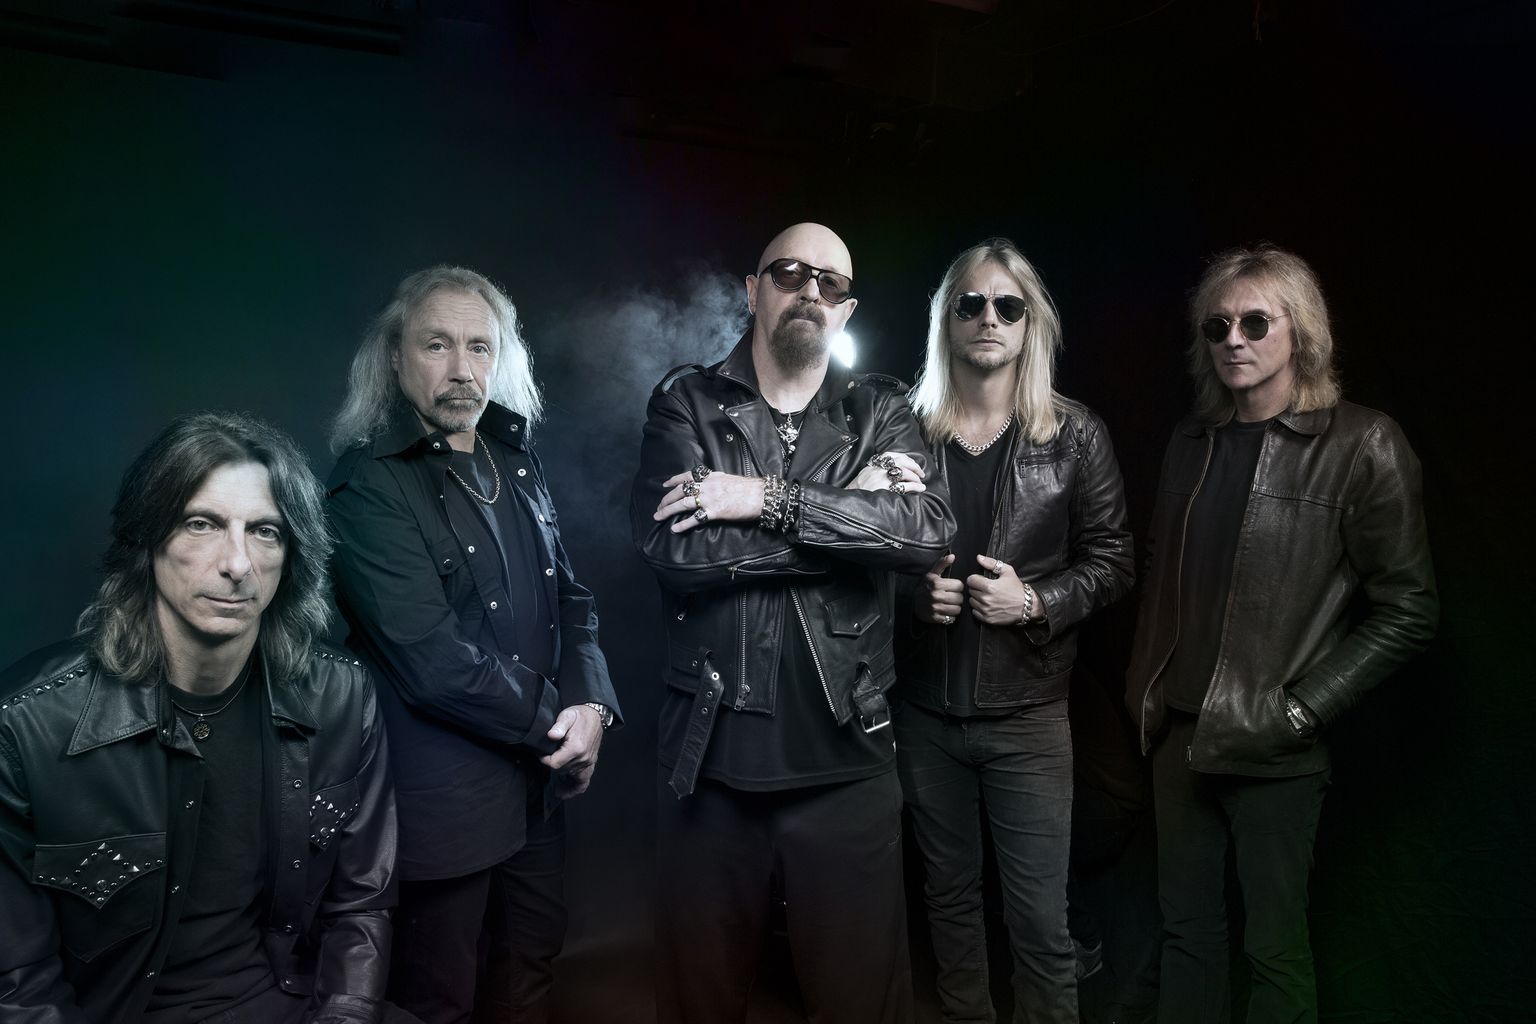 Üks maailma tähtsamaid rockbände, tänavu oma 50. juubelit tähistanud Judas Priest.